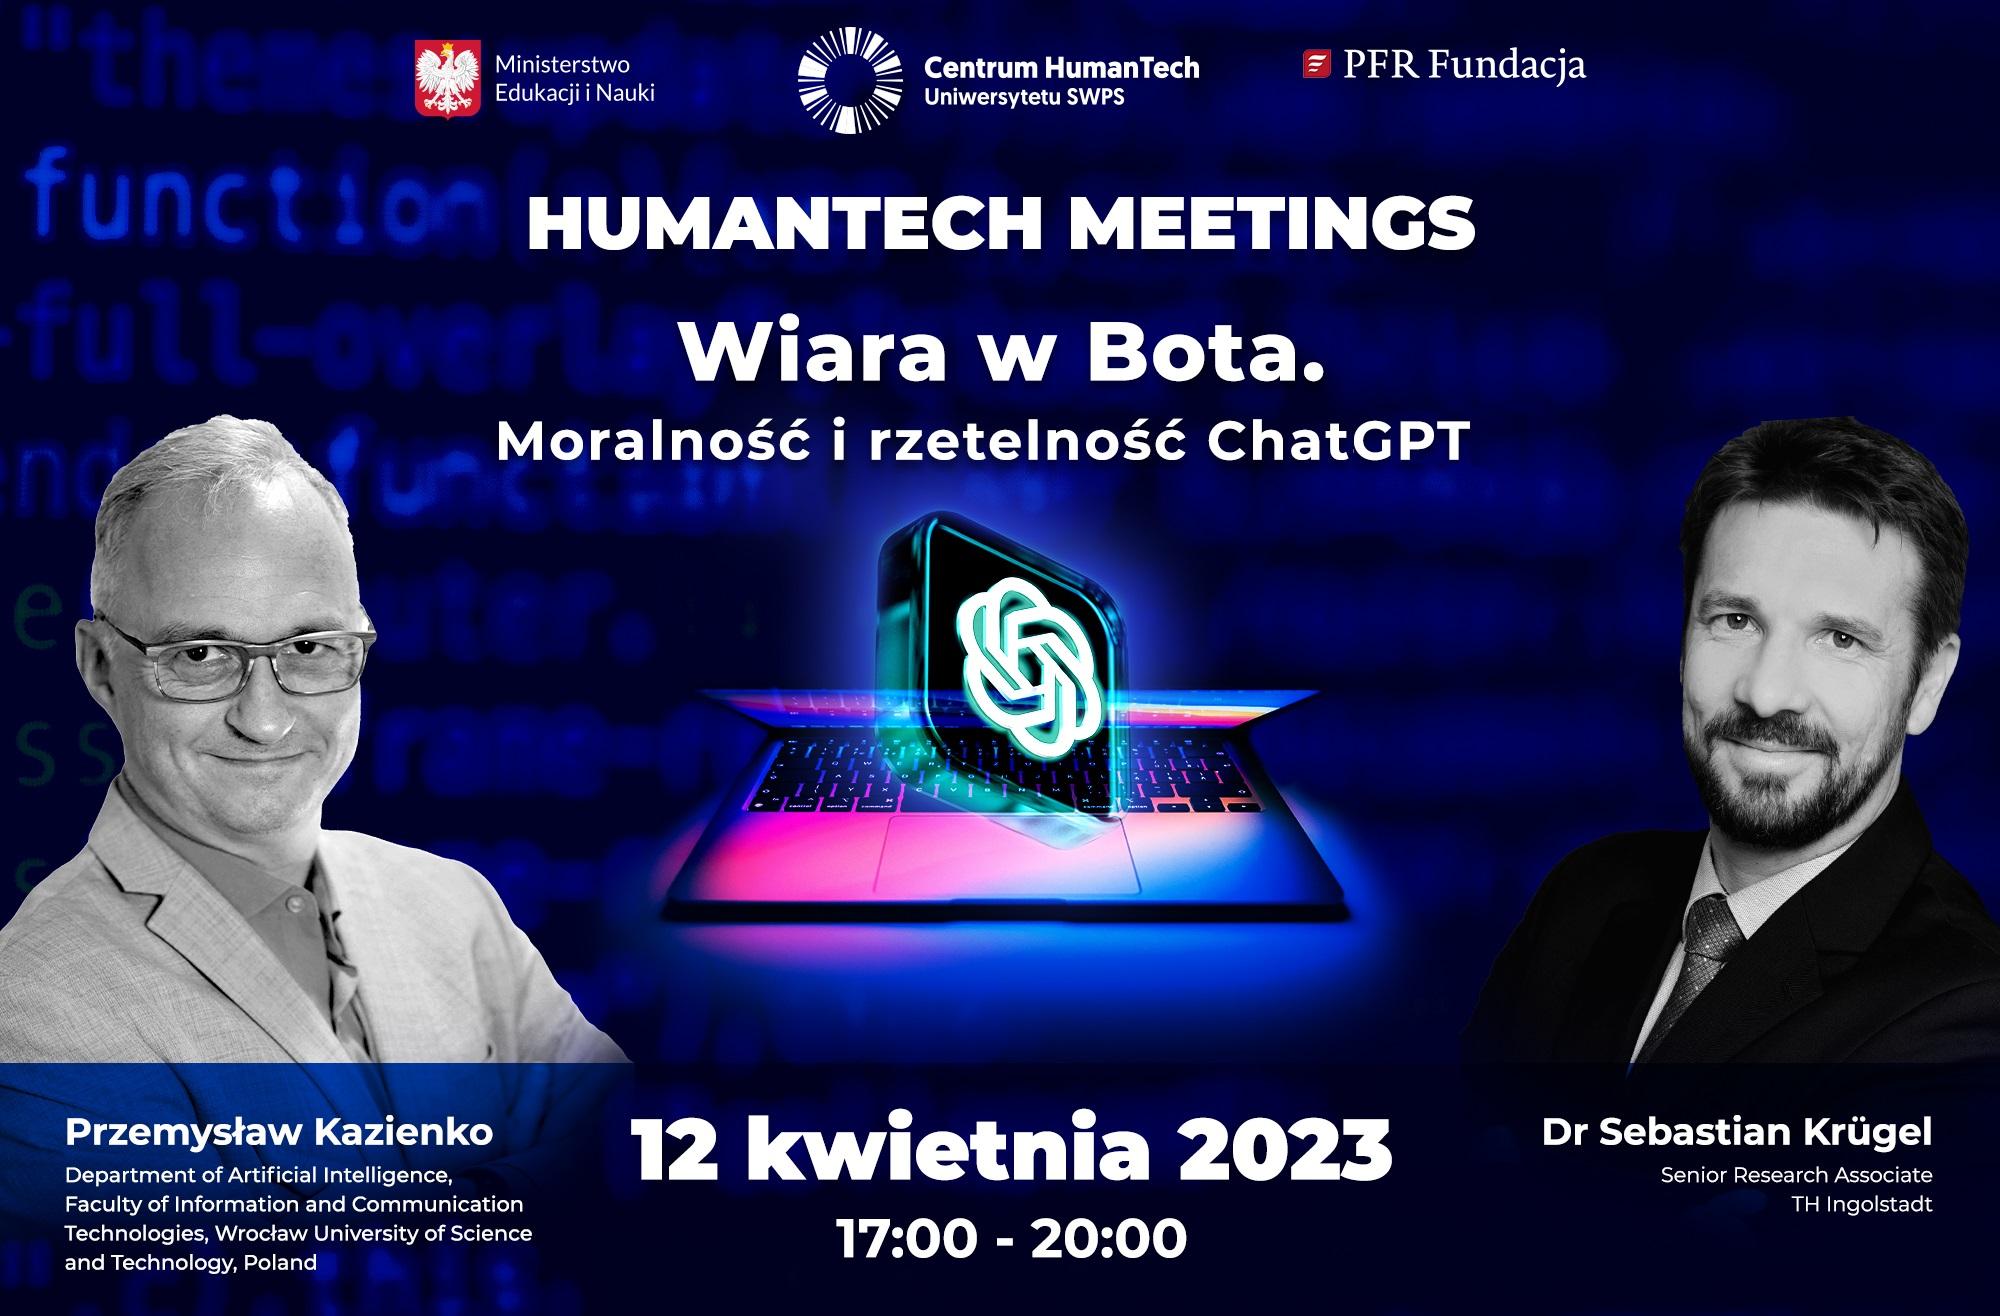 HumanTech Meetings II: Wiara w Bota. Moralność i rzetelność programu ChatGPT